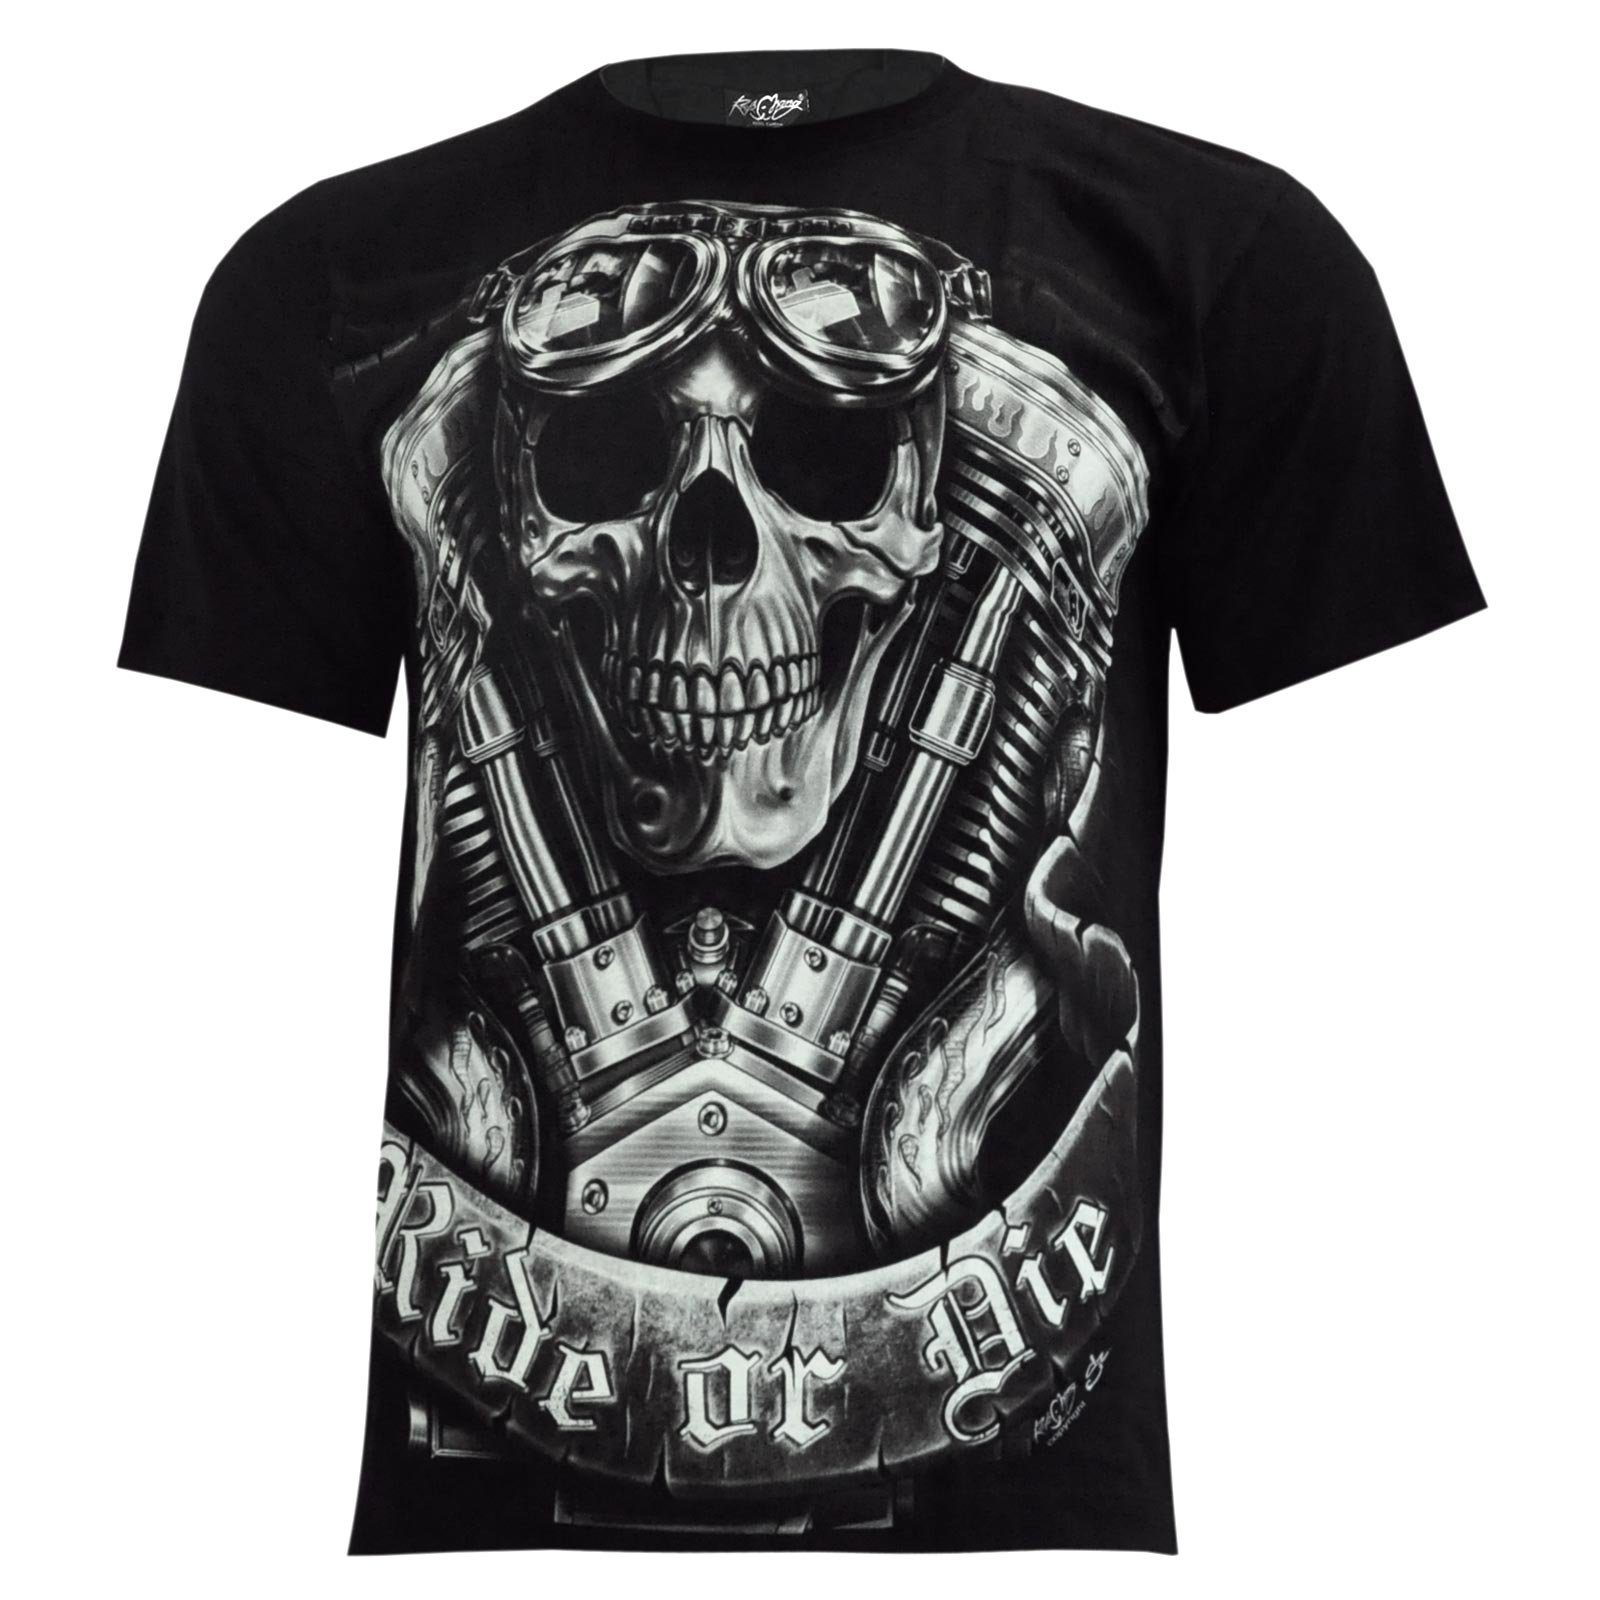 Wilai T-Shirt Rock Metal T-Shirt Heavy Chang Biker Tattoo Rocker